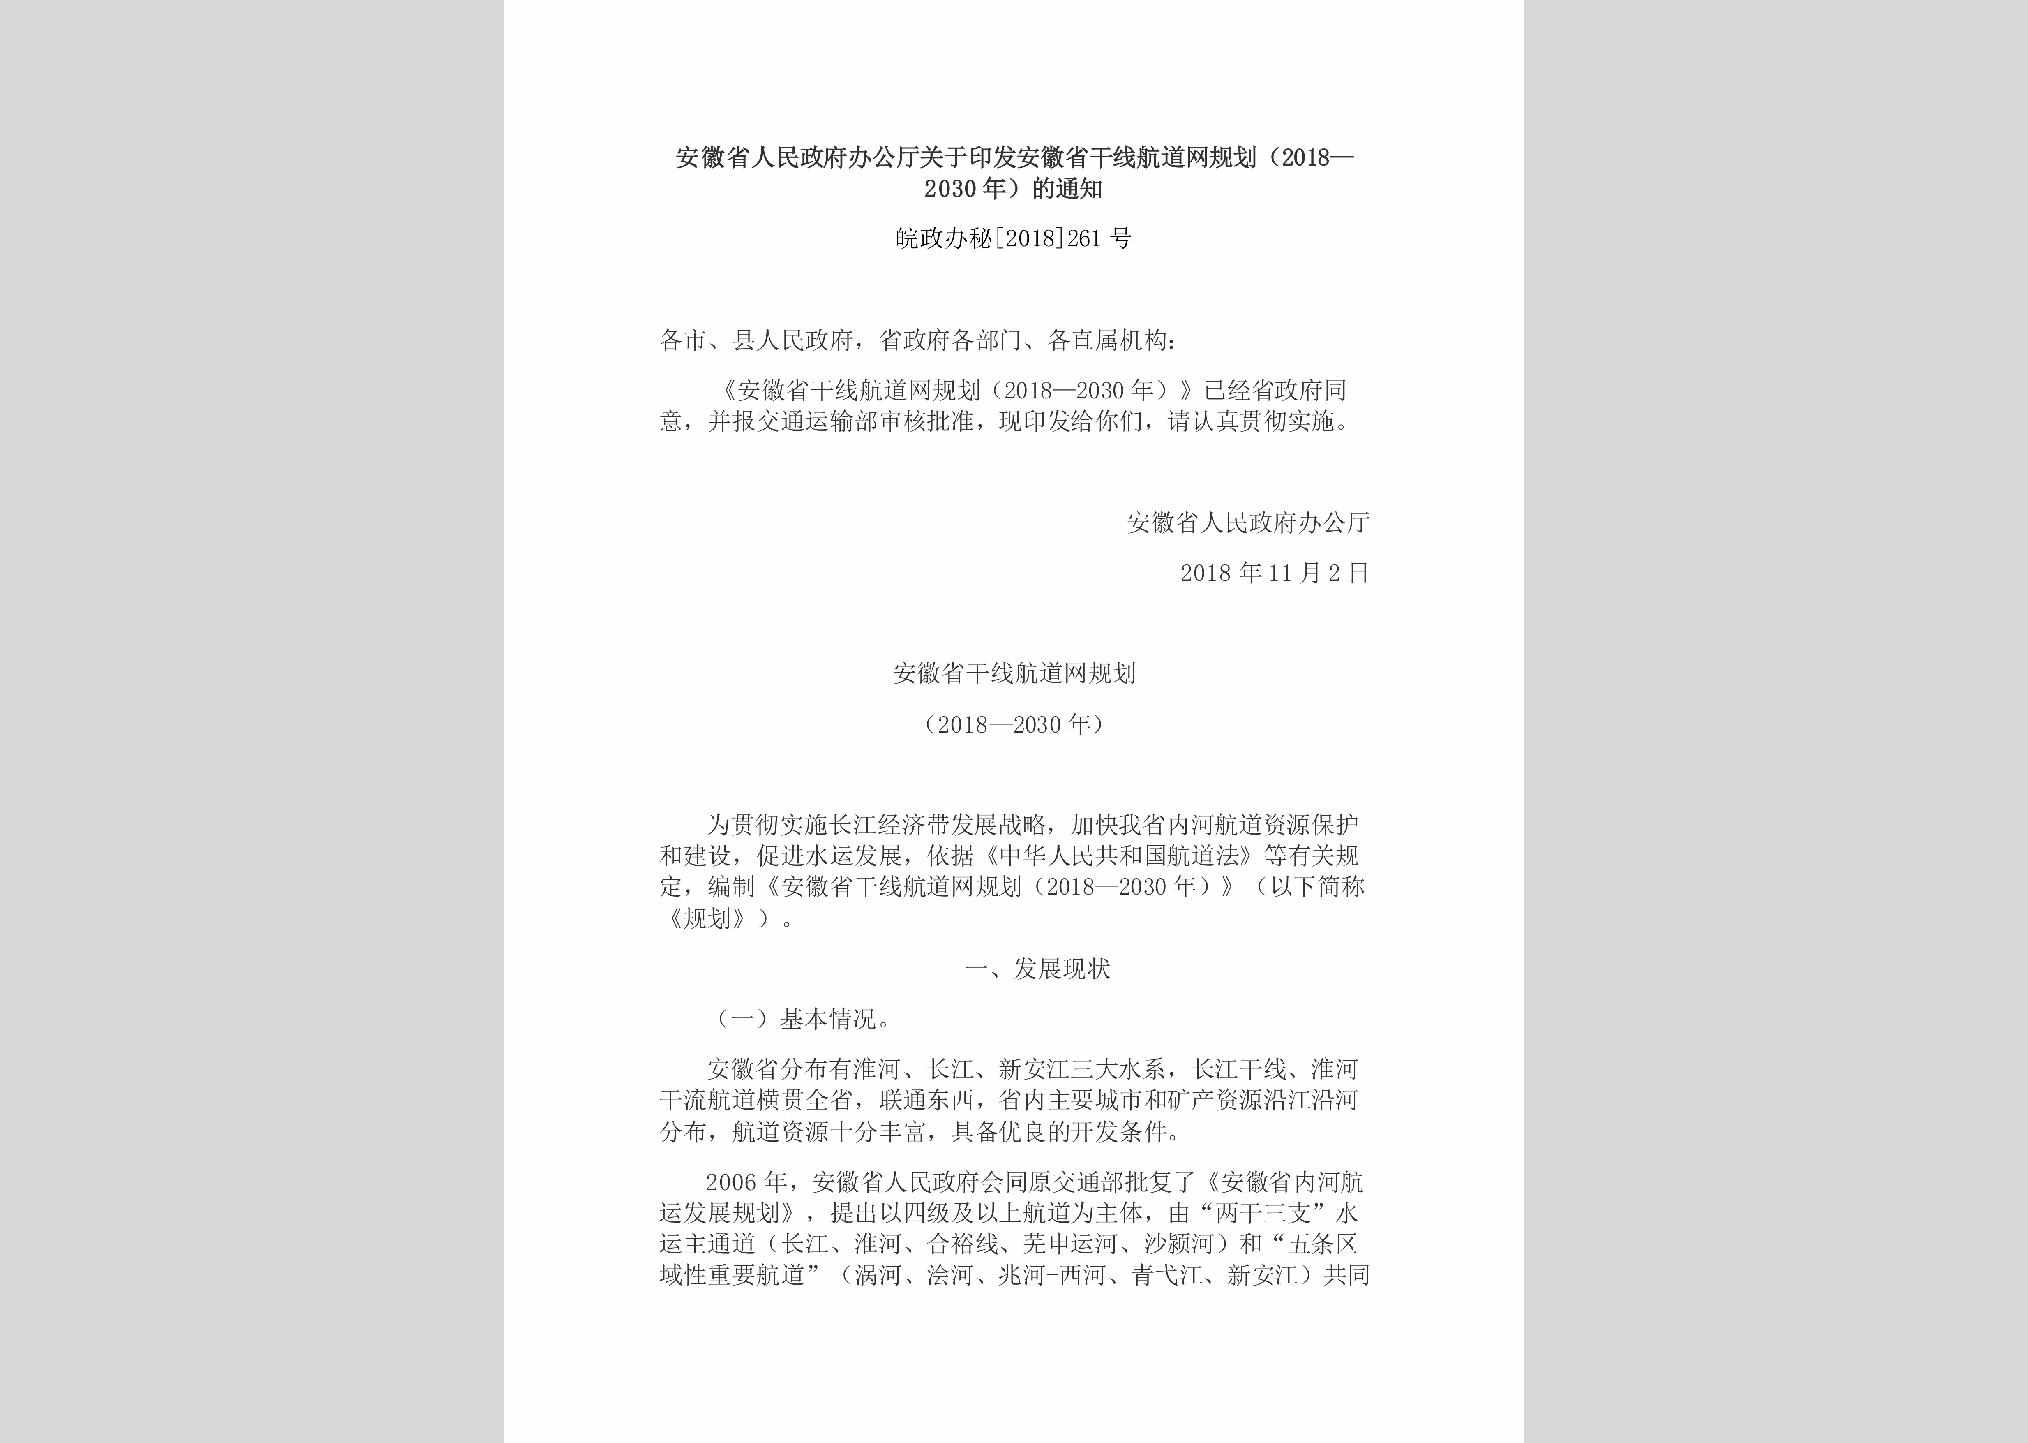 皖政办秘[2018]261号：安徽省人民政府办公厅关于印发安徽省干线航道网规划（2018—2030年）的通知